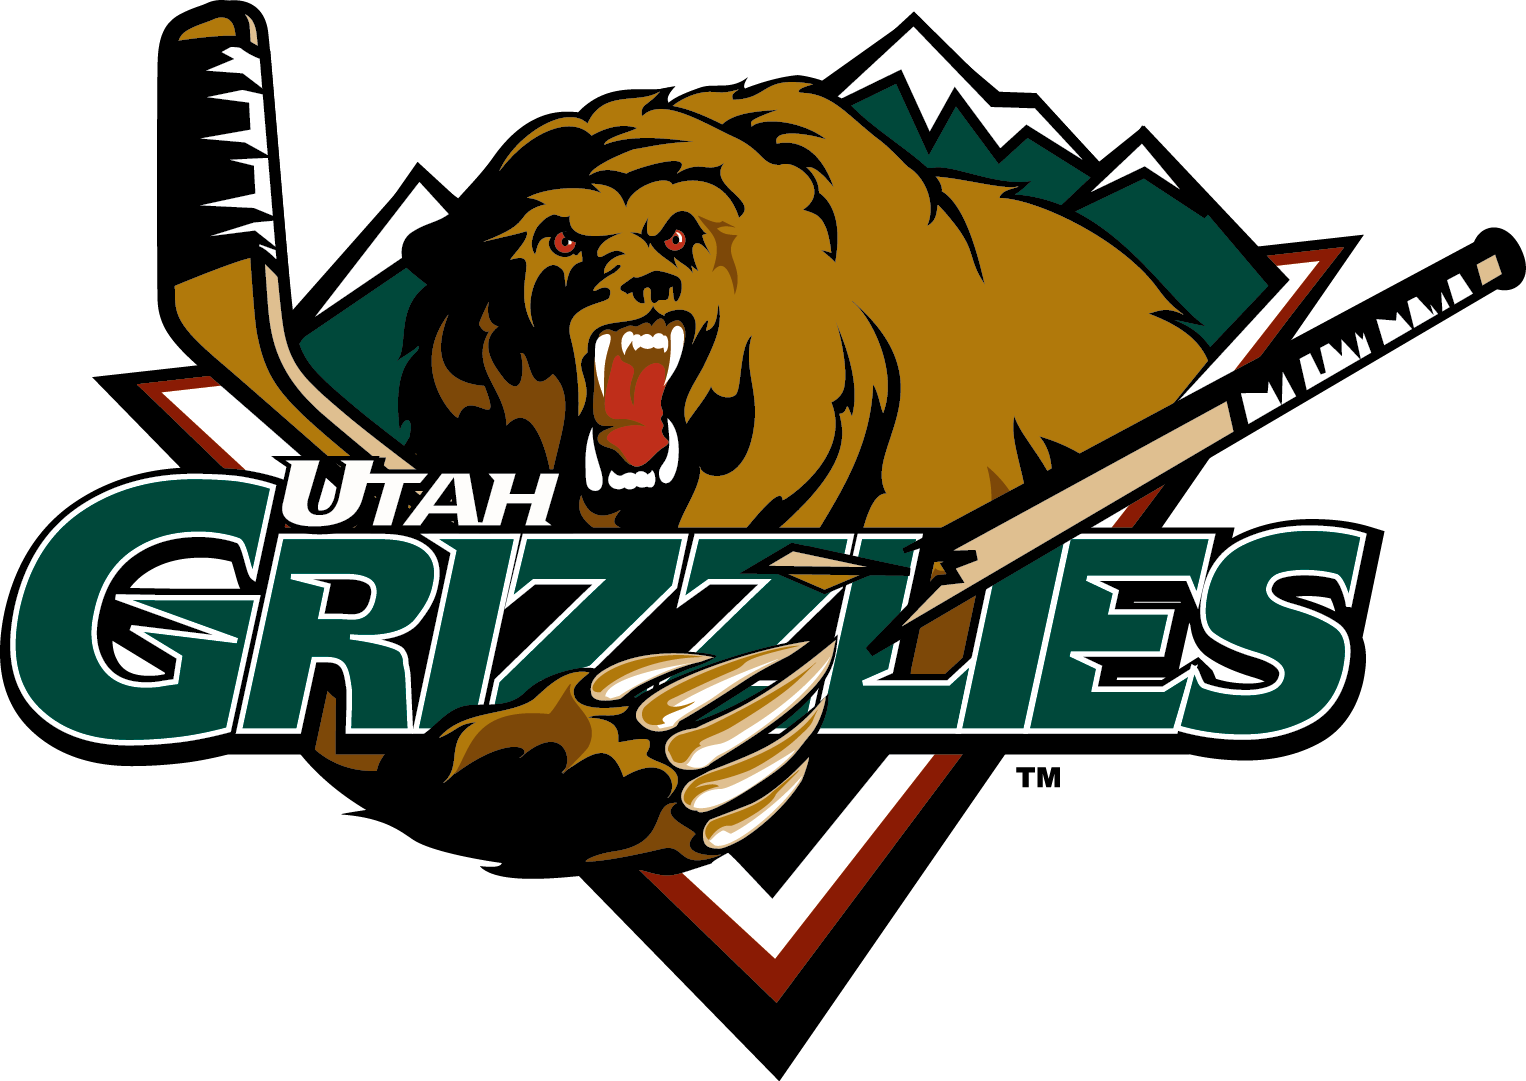 Grizzlies - Utah Grizzlies Png (1526x1081)